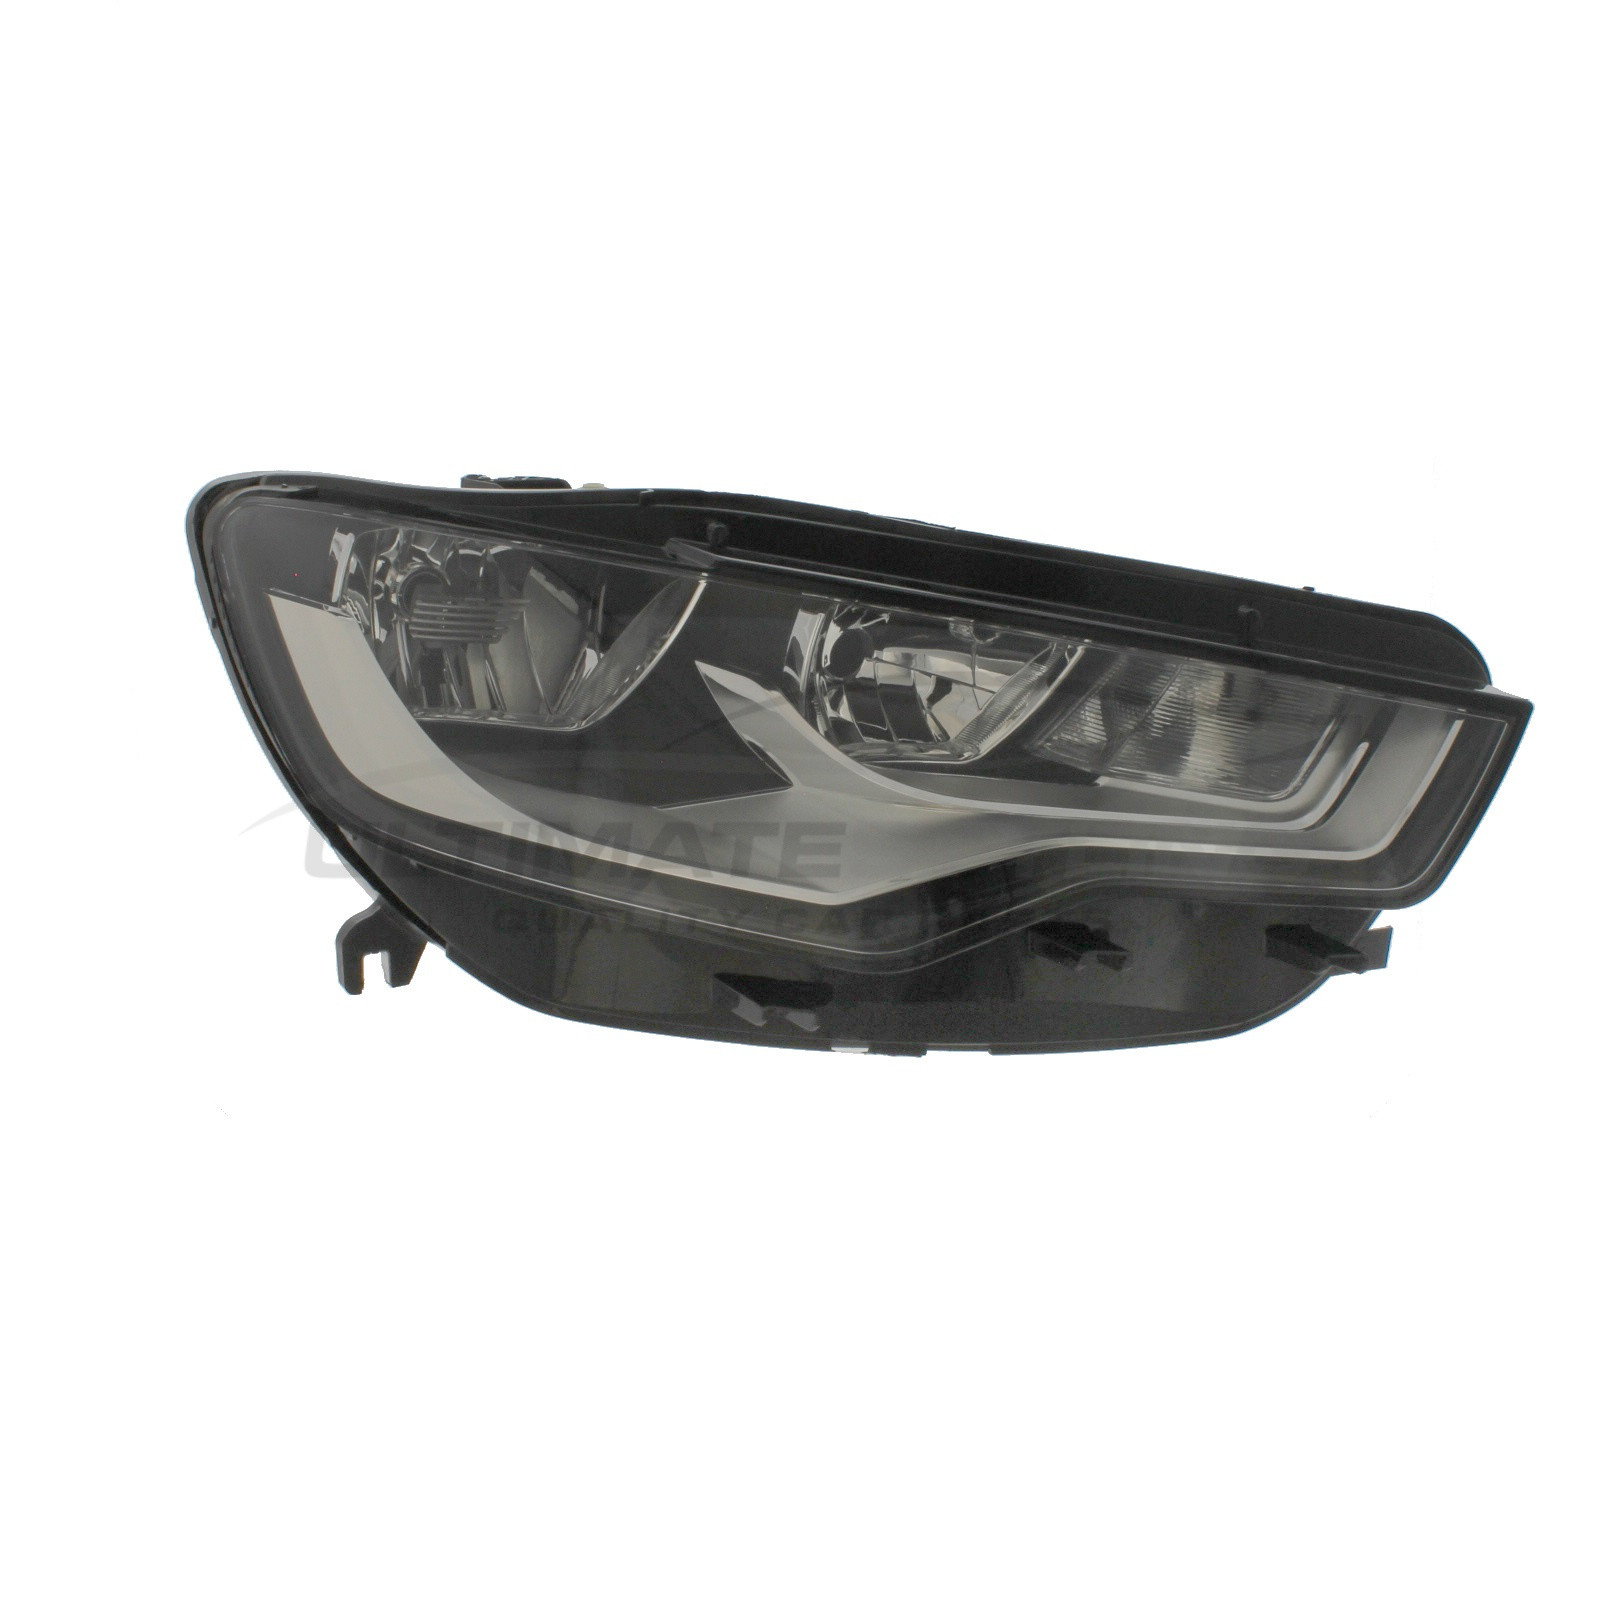 Headlight / Headlamp for Audi A6